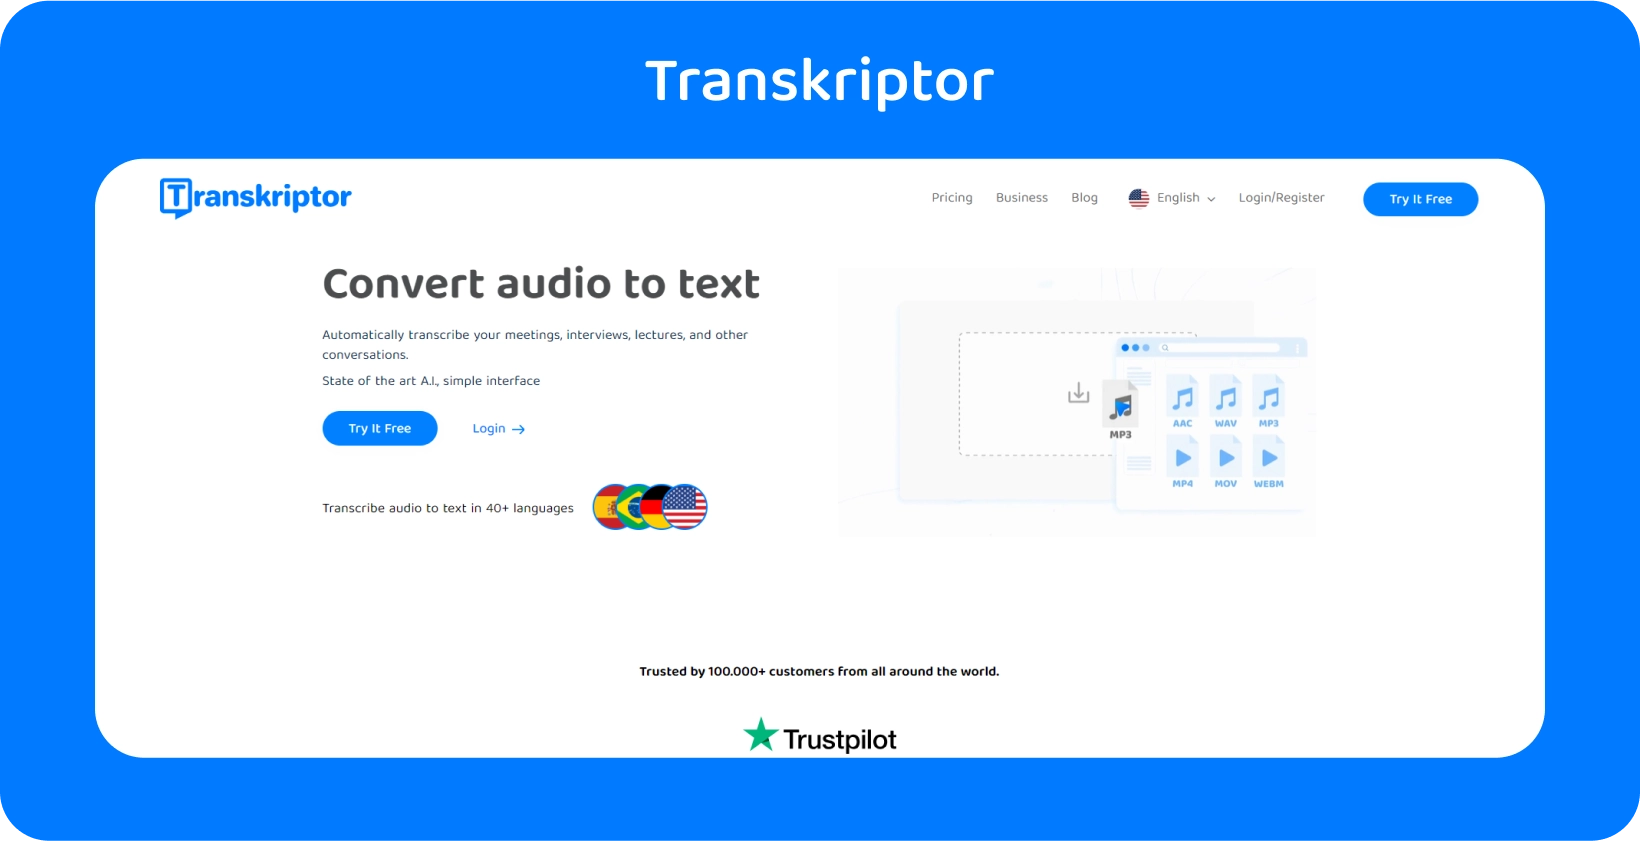 Une métaphore visuelle pour choisir des services de transcription axés sur les avocats avec l’interface Transkriptor.